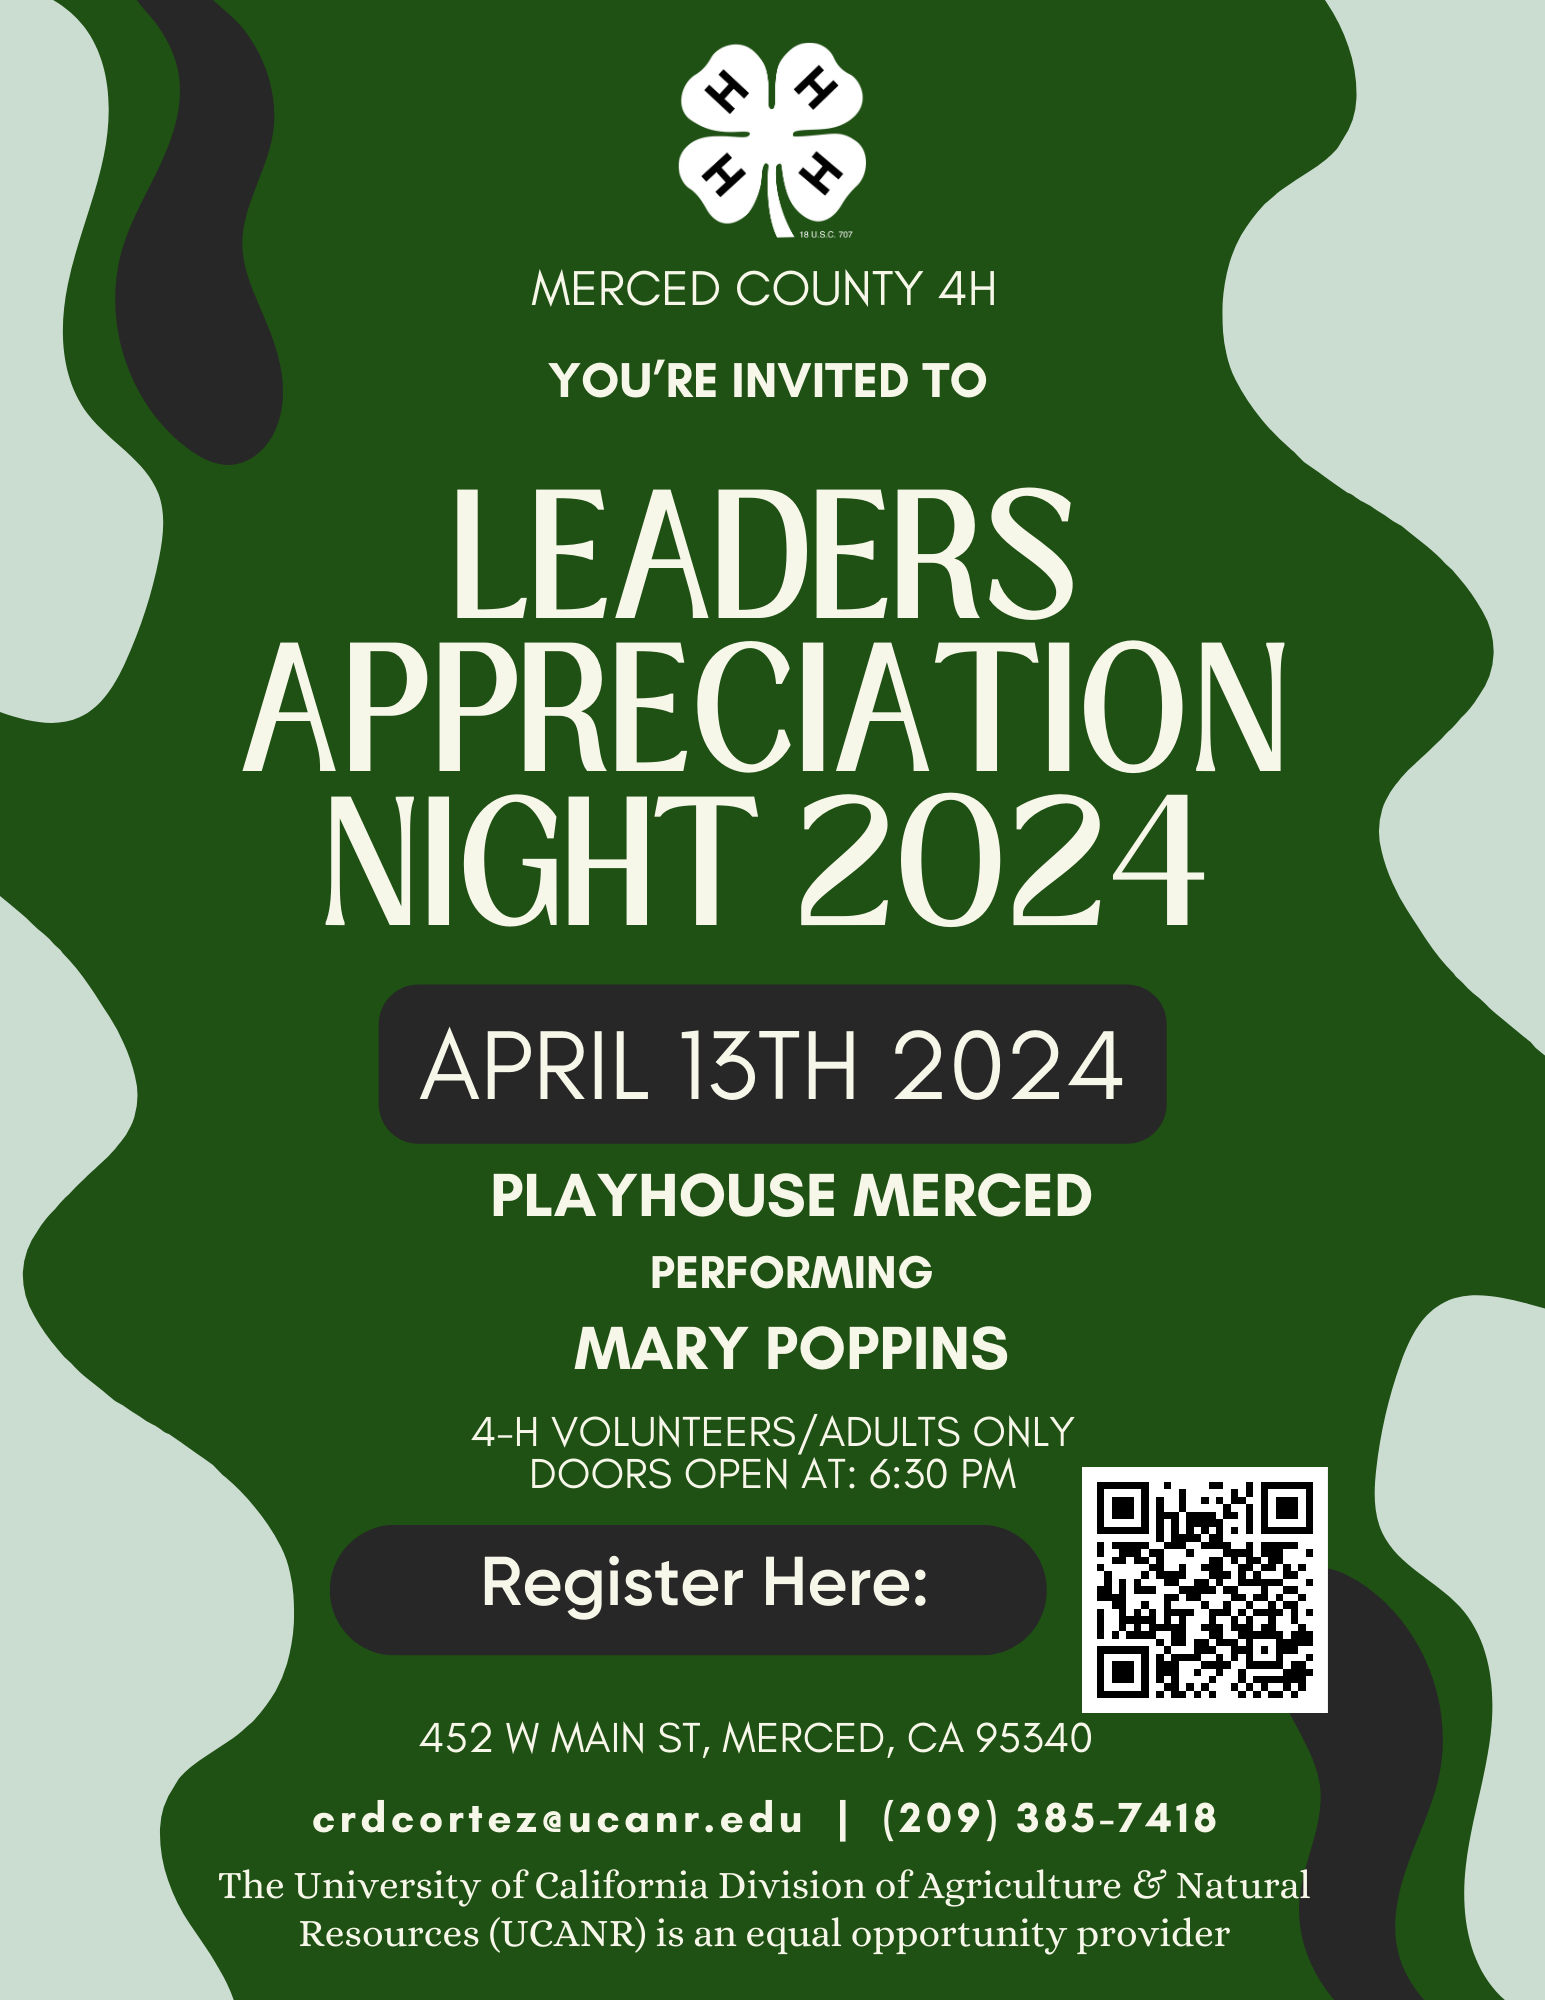 Leaders Appreciation Night 2024 Flyer (2)